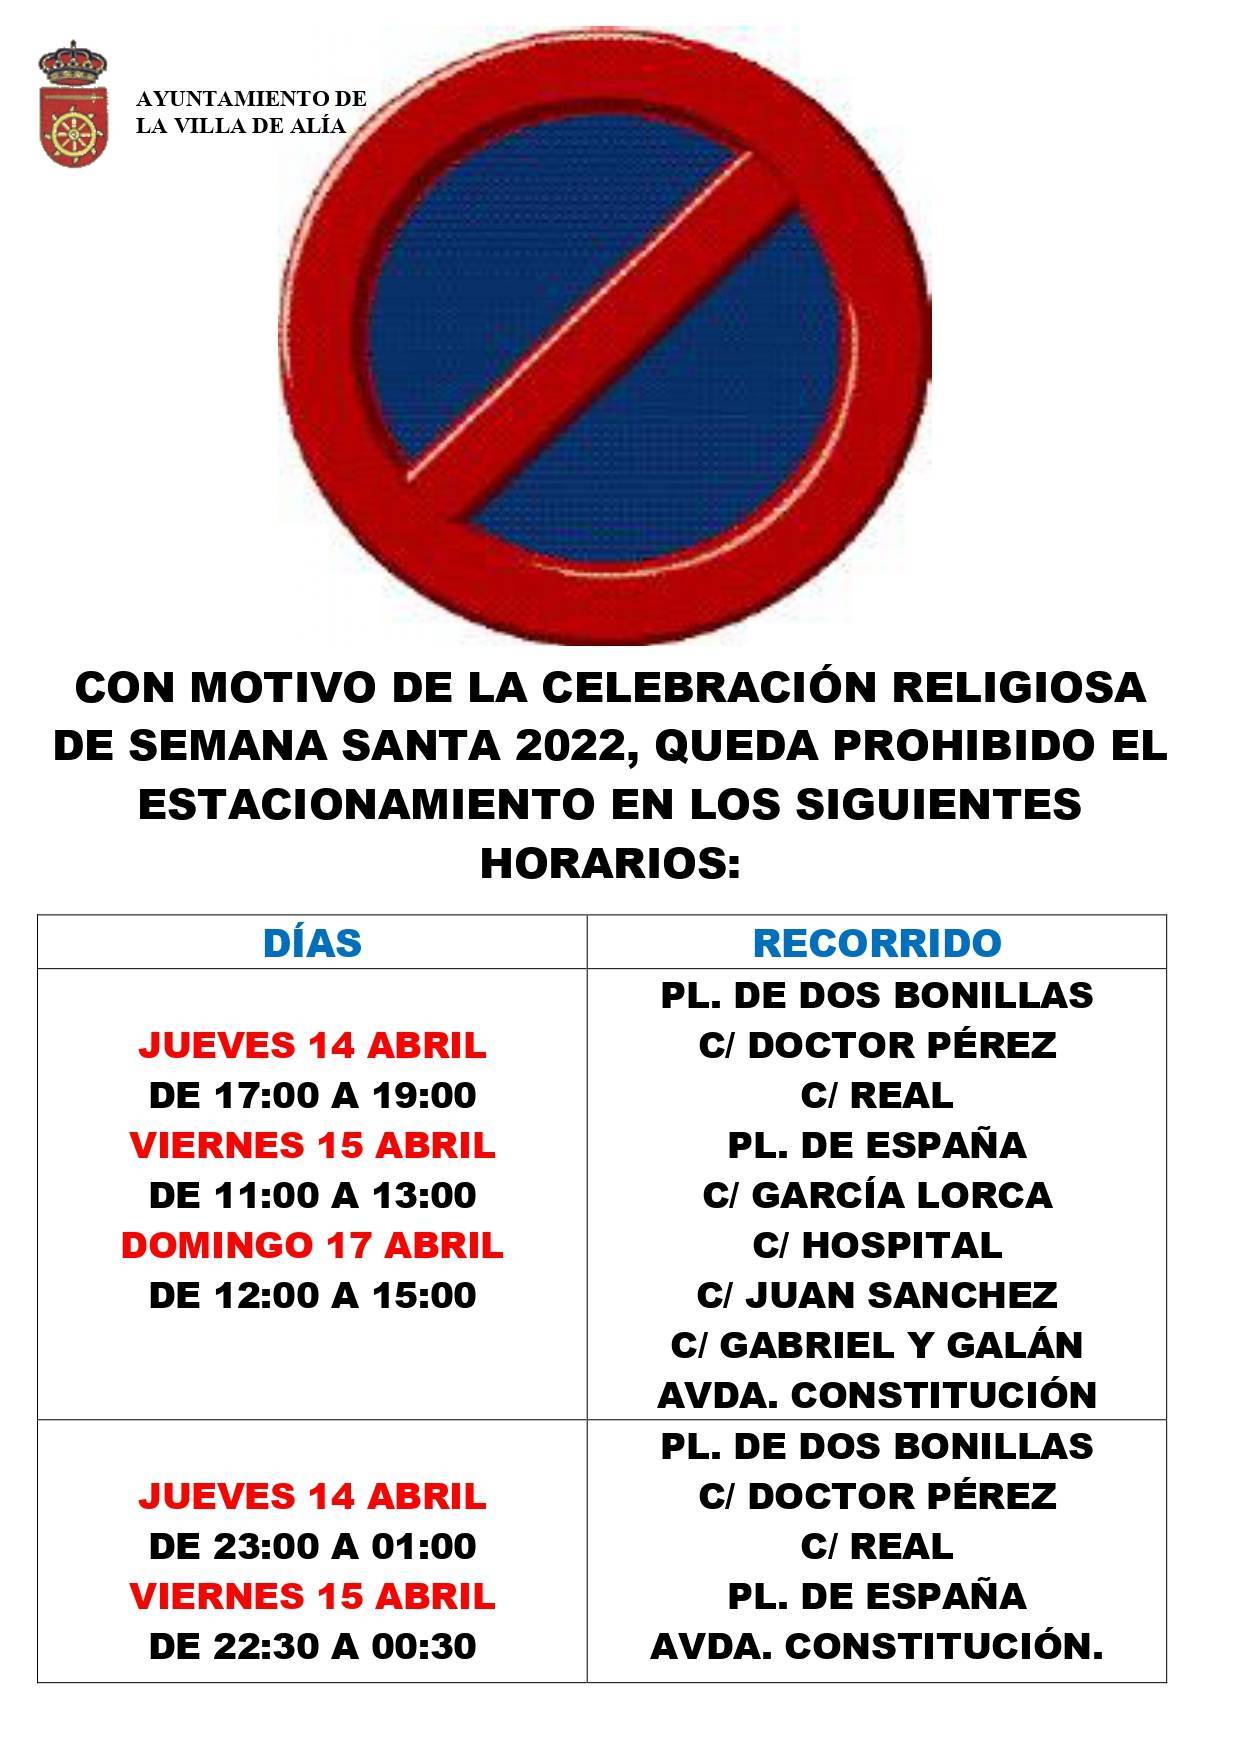 Prohibición del estacionamiento por la Semana Santa (2022) - Alía (Cáceres)